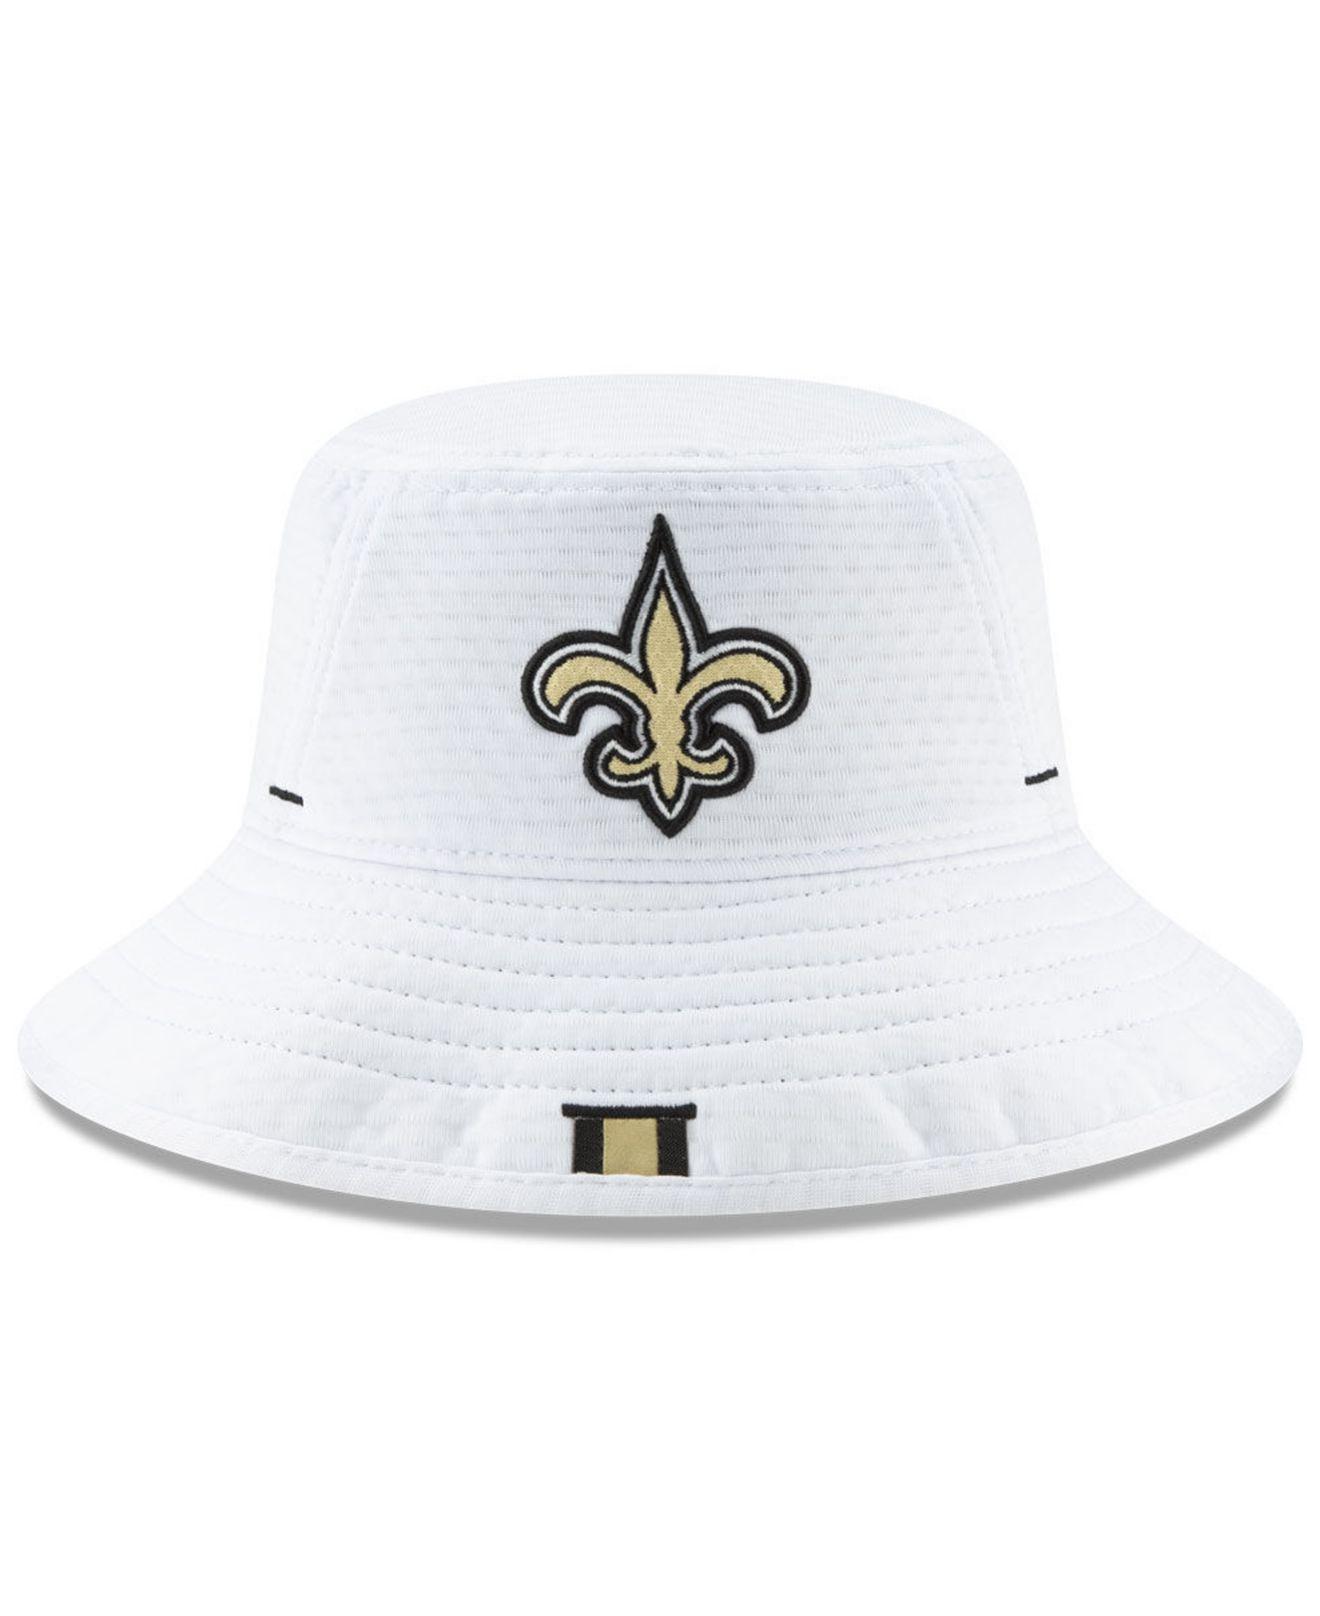 new orleans saints hats for sale